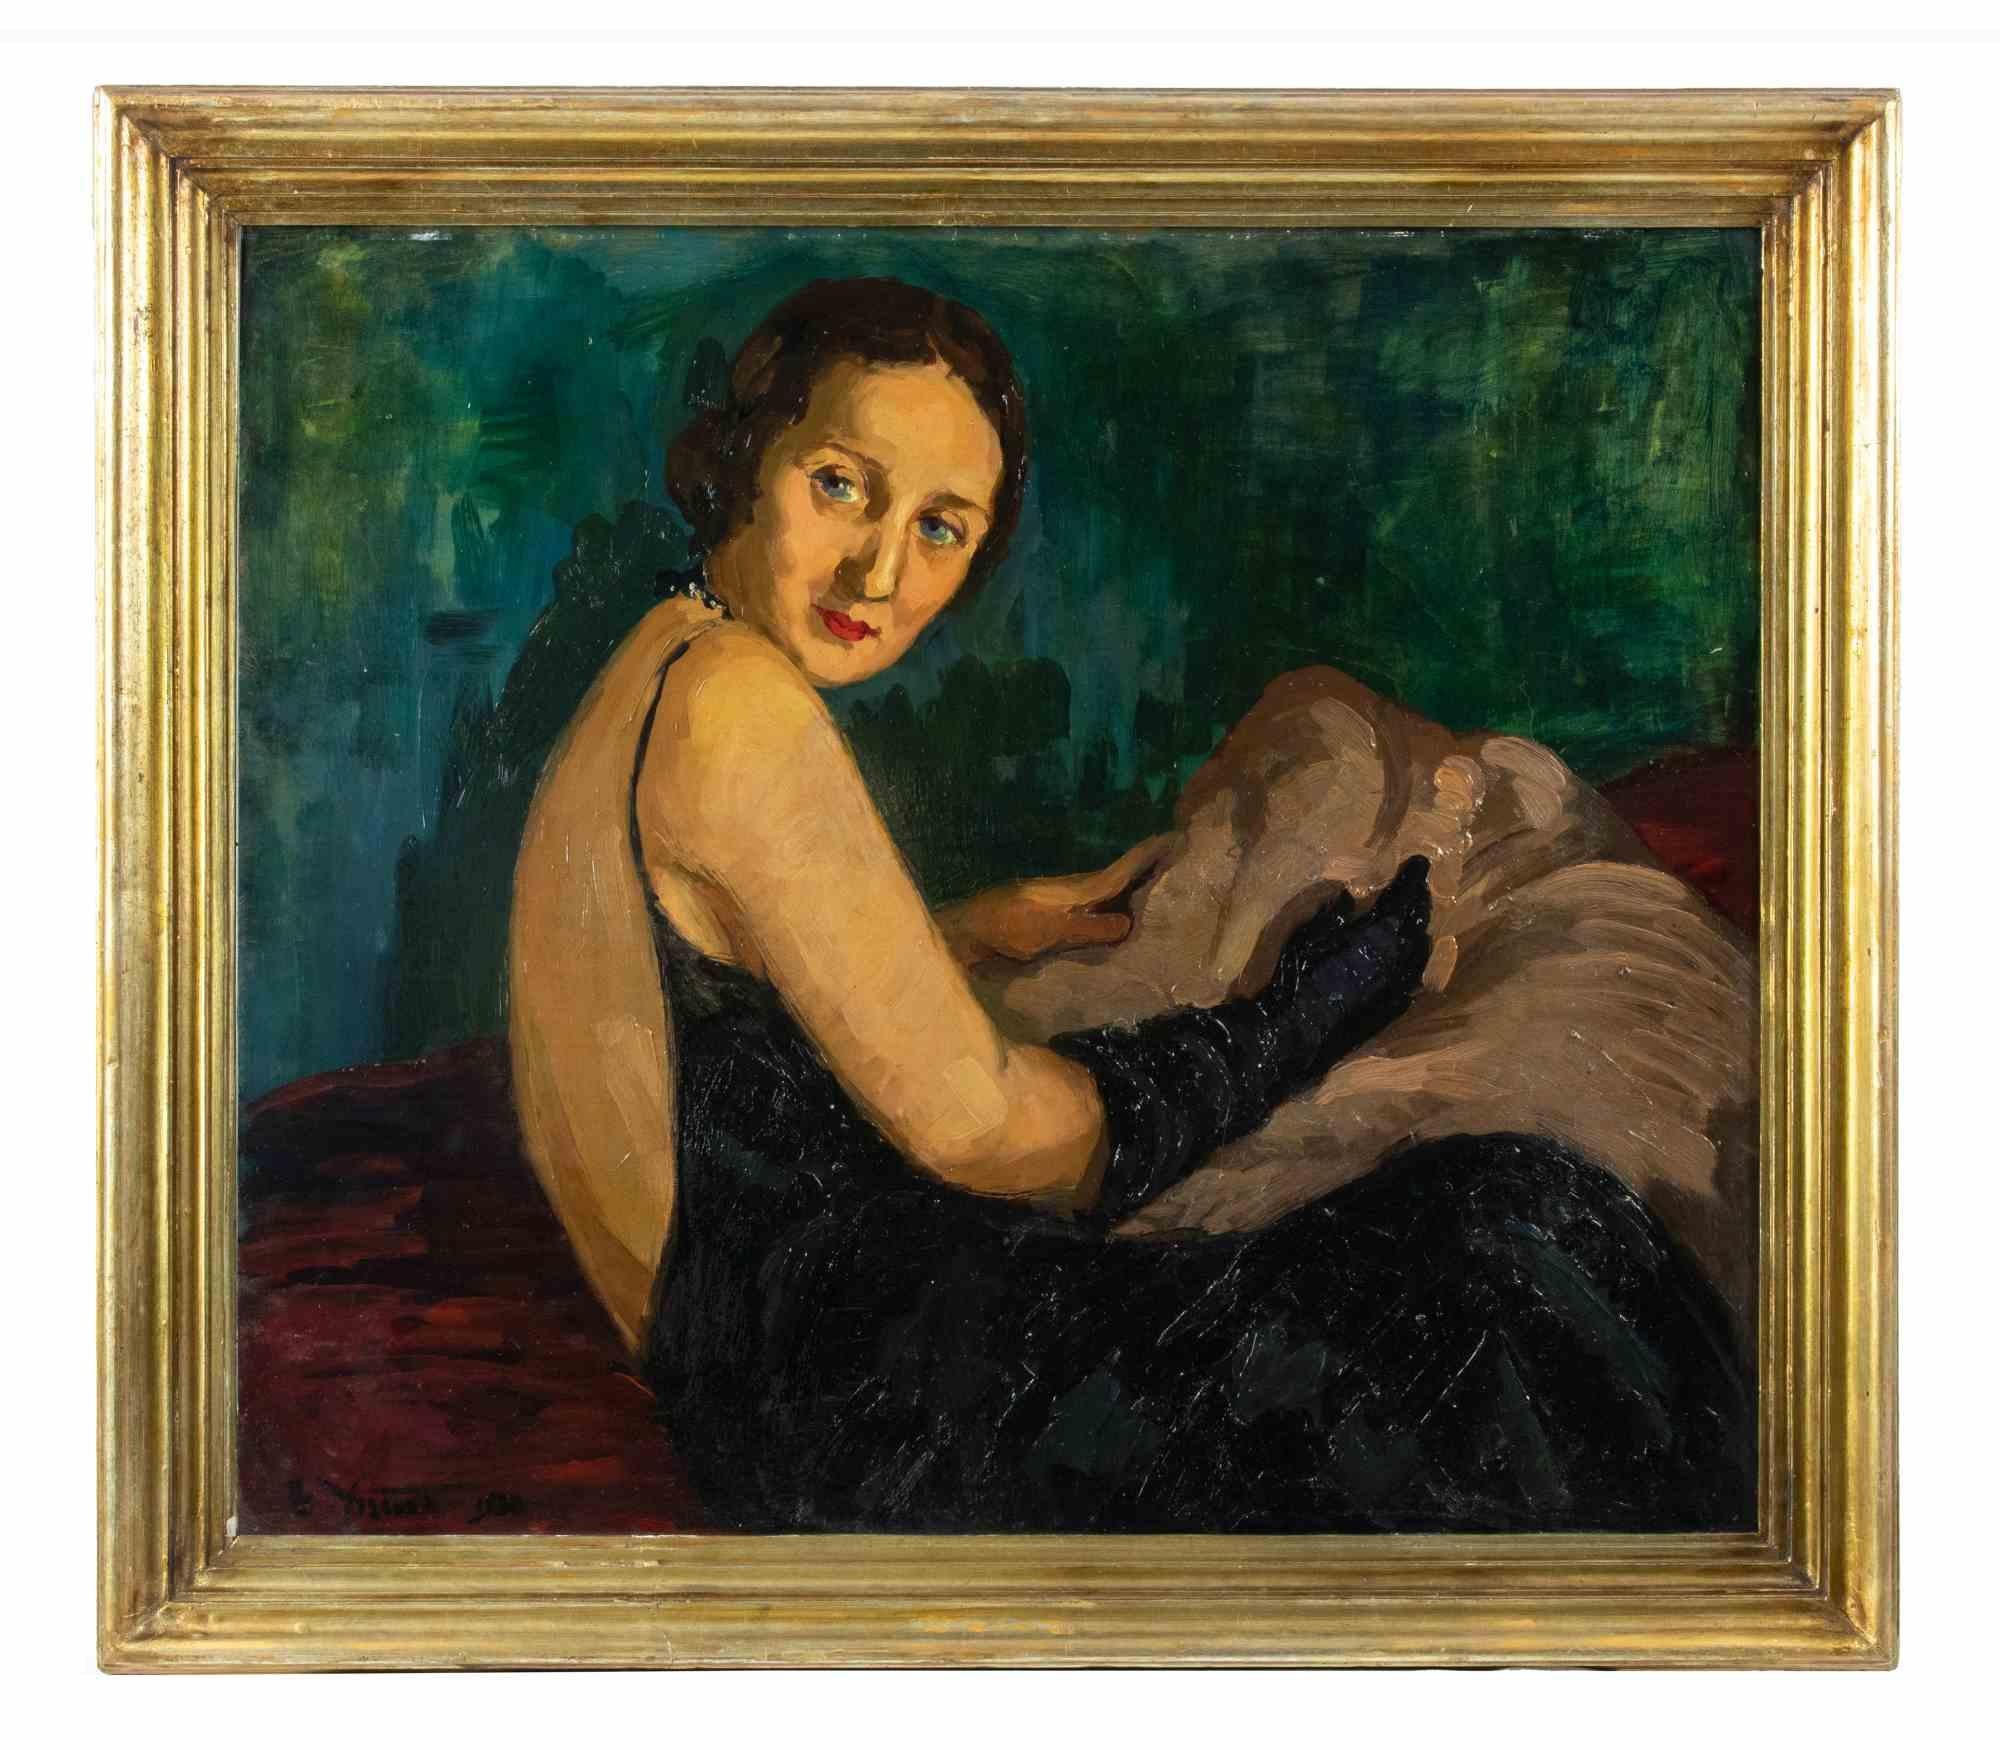 Woman ist ein modernes Original-Kunstwerk von Eliseu Visconti (1866-1944) aus dem Jahr 1930.

Gemischtes farbiges Ölgemälde.

Am unteren Rand handsigniert und datiert.